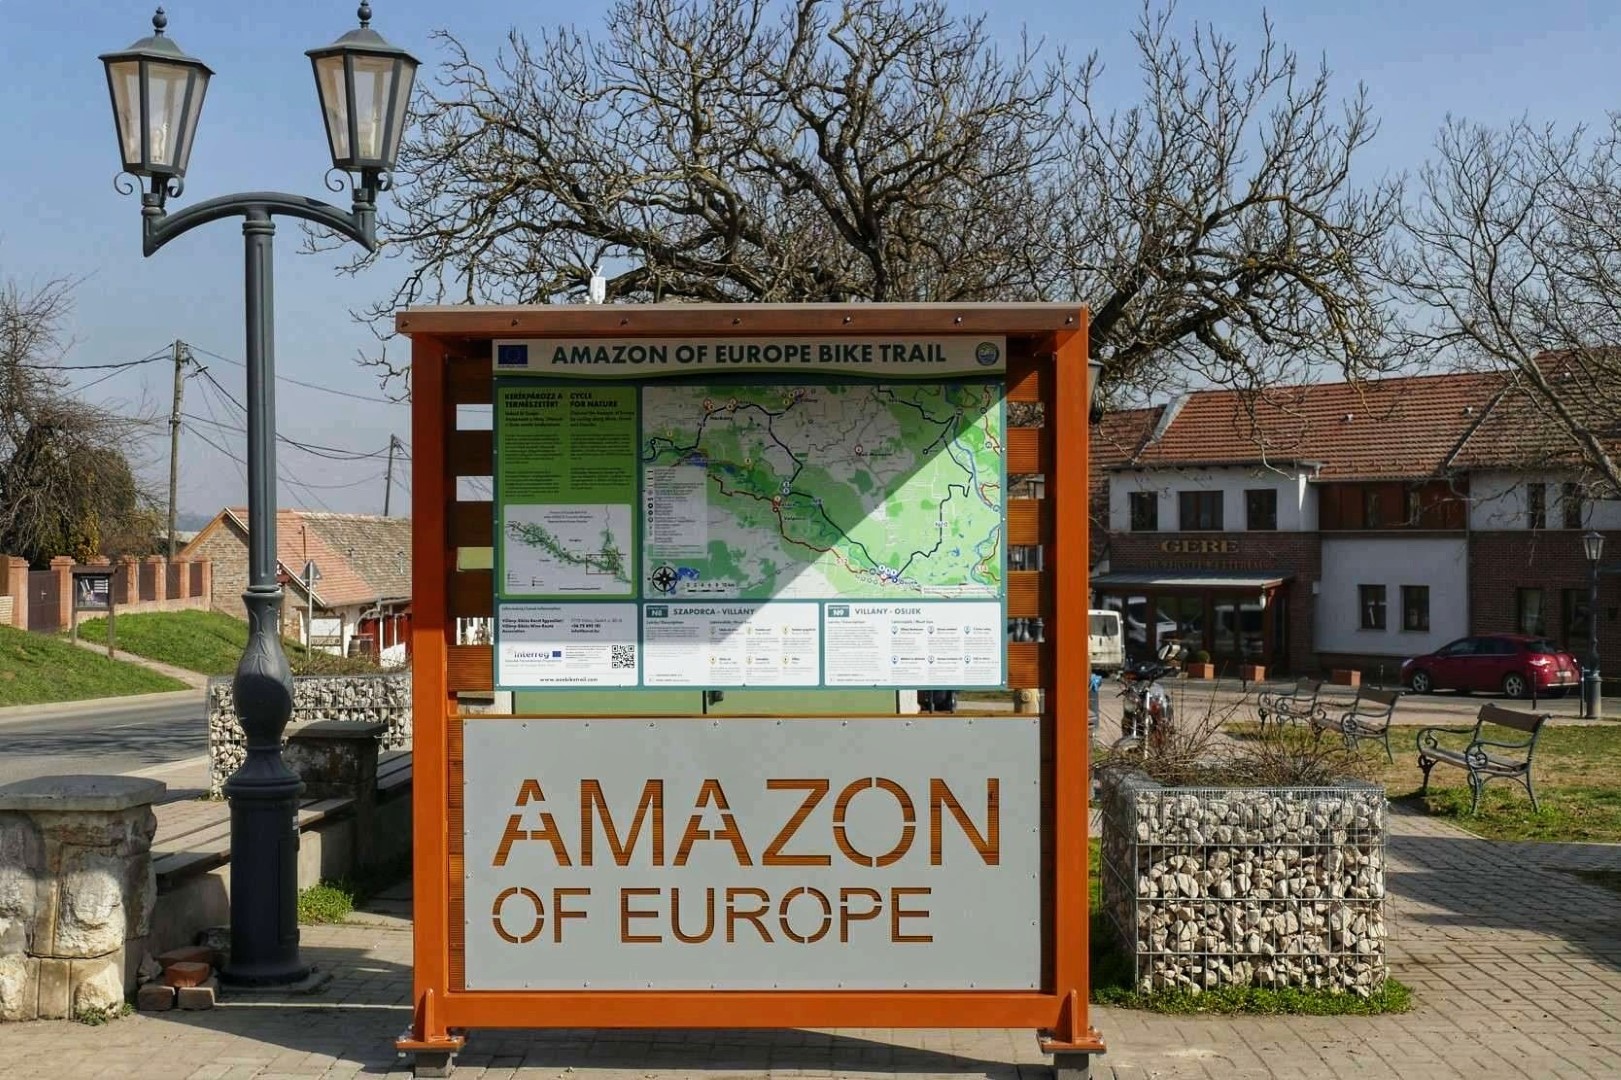 Amazon_of_Europe_Bike_Trail_06.jpg